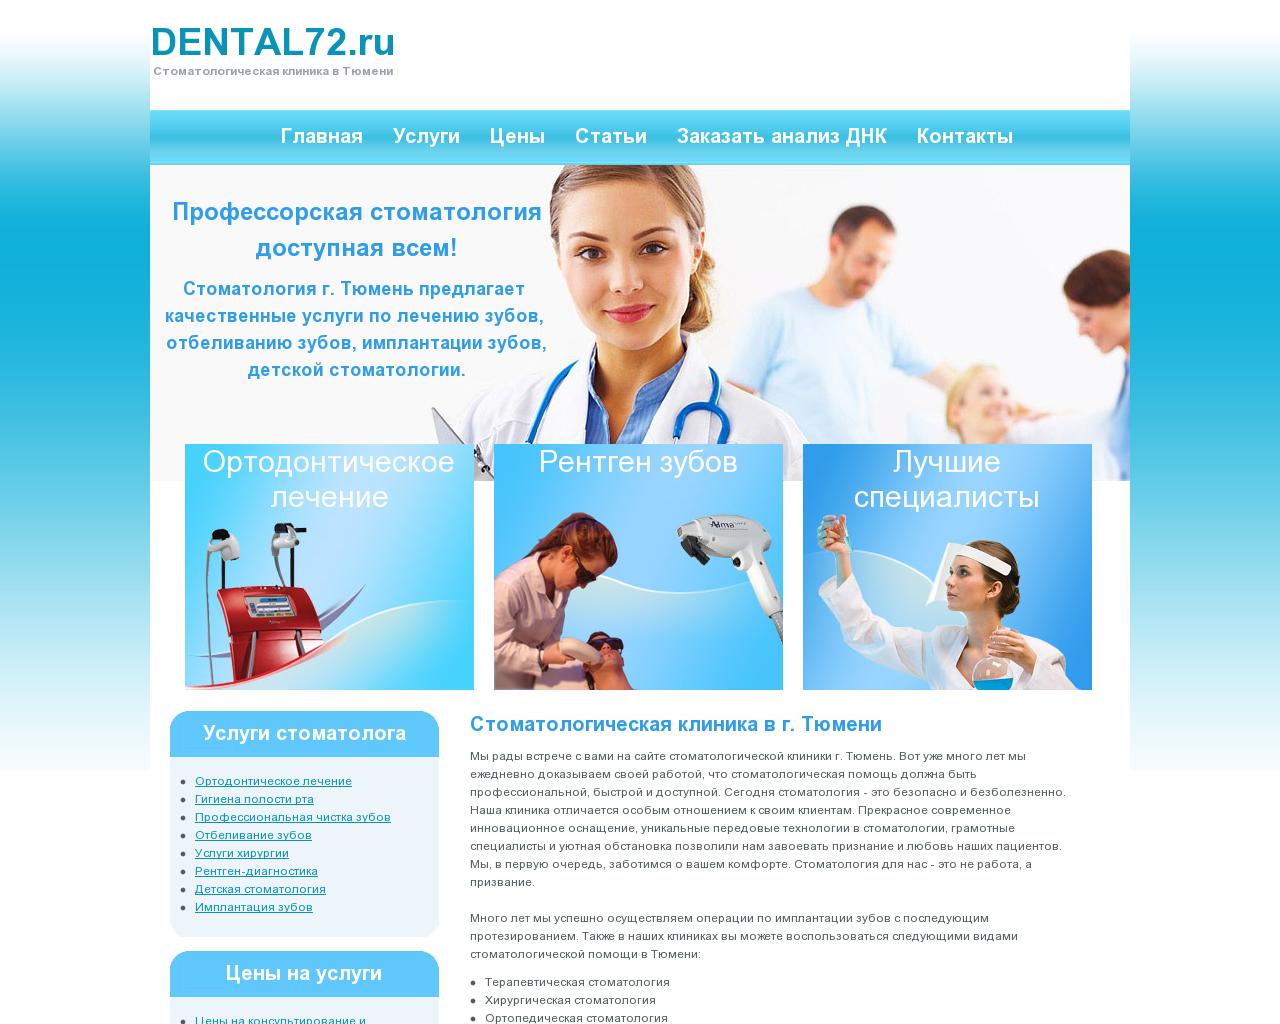 Изображение сайта dental72.ru в разрешении 1280x1024